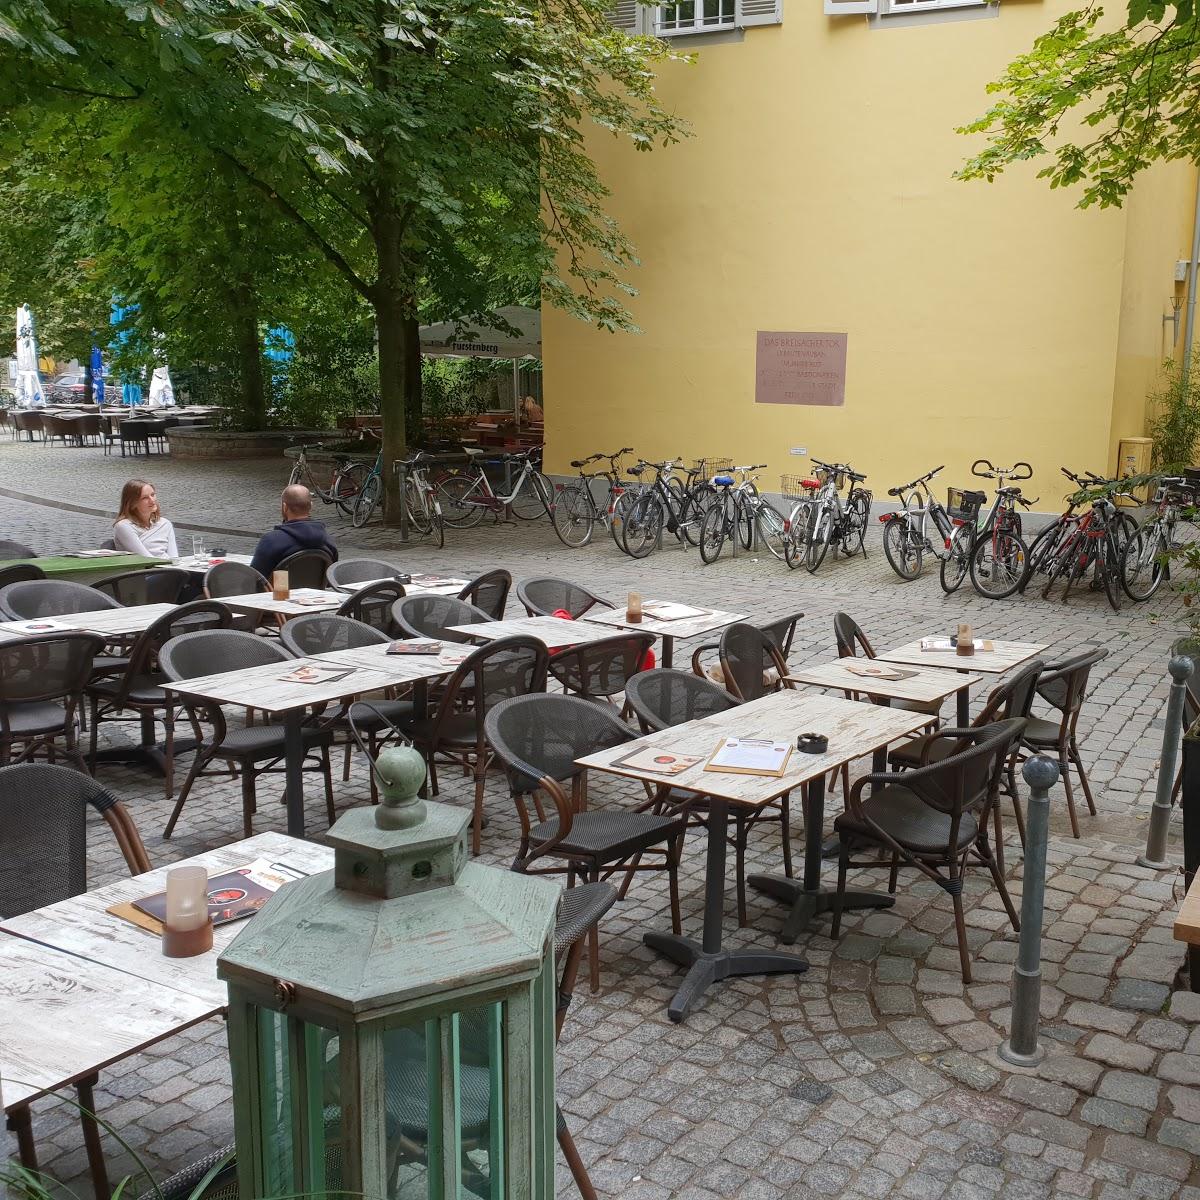 Restaurant "Erste Liebe Freiburg" in Freiburg im Breisgau